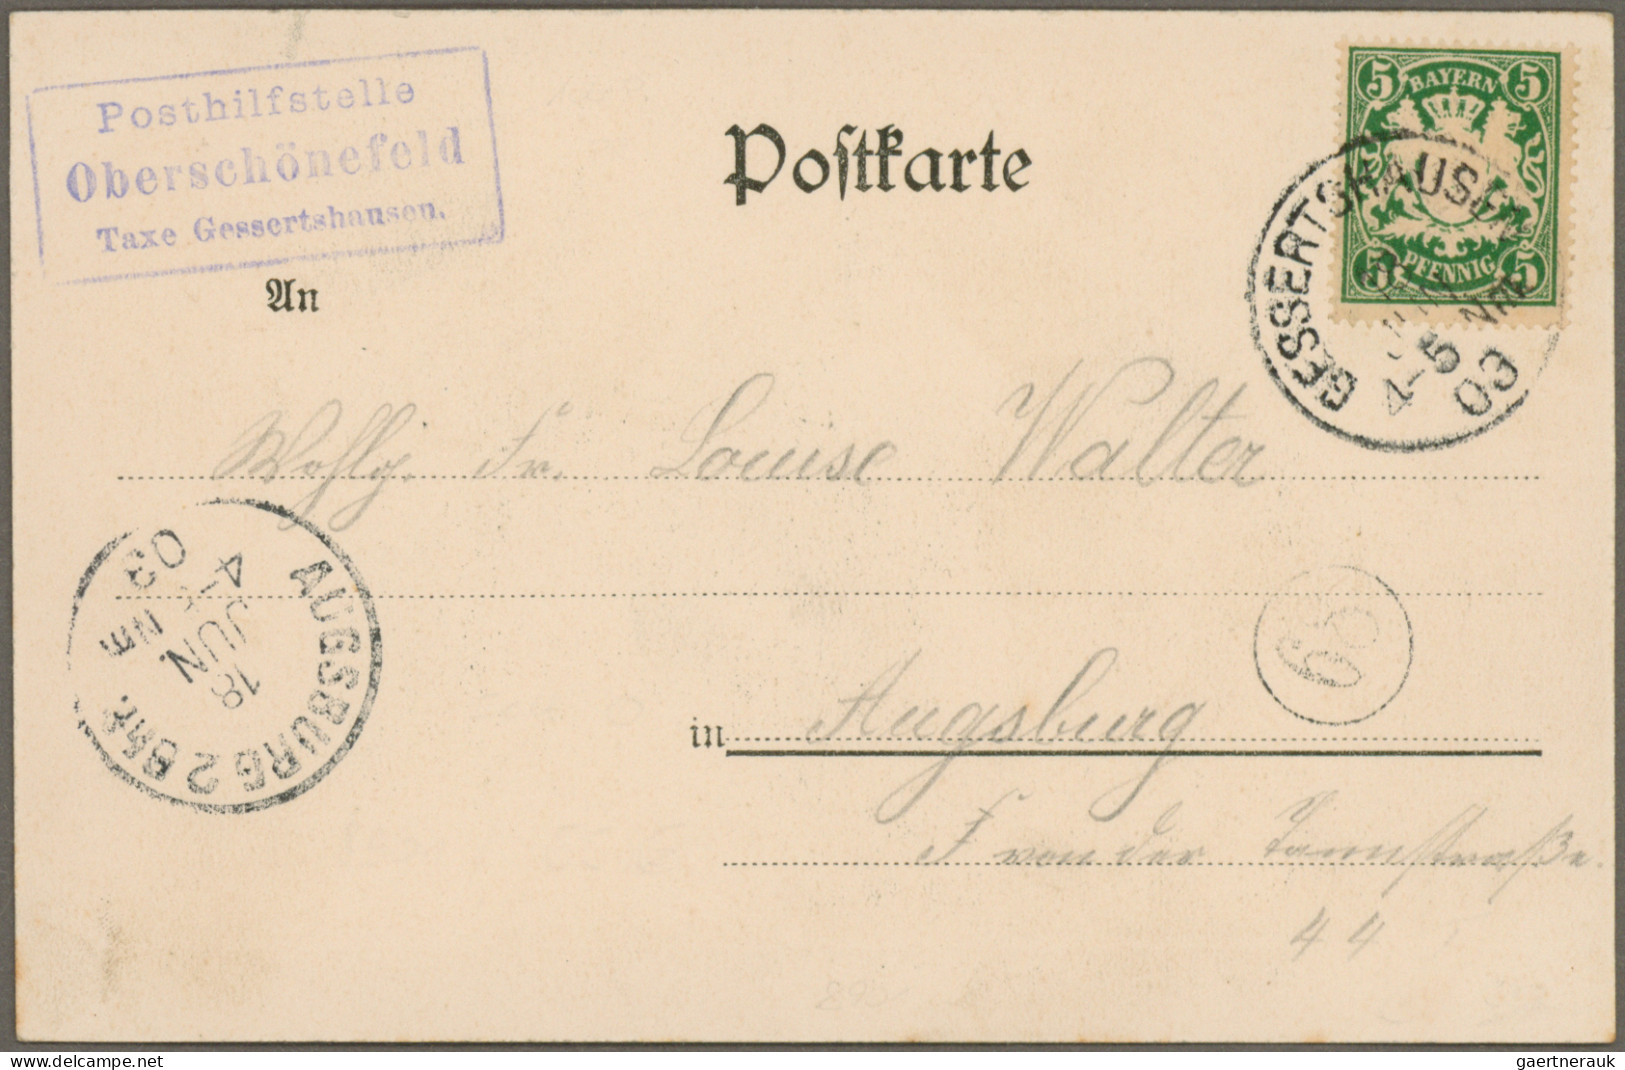 Bayern - Marken und Briefe: 1876/1920, vielseitige Partie von ca. 50 Briefen und